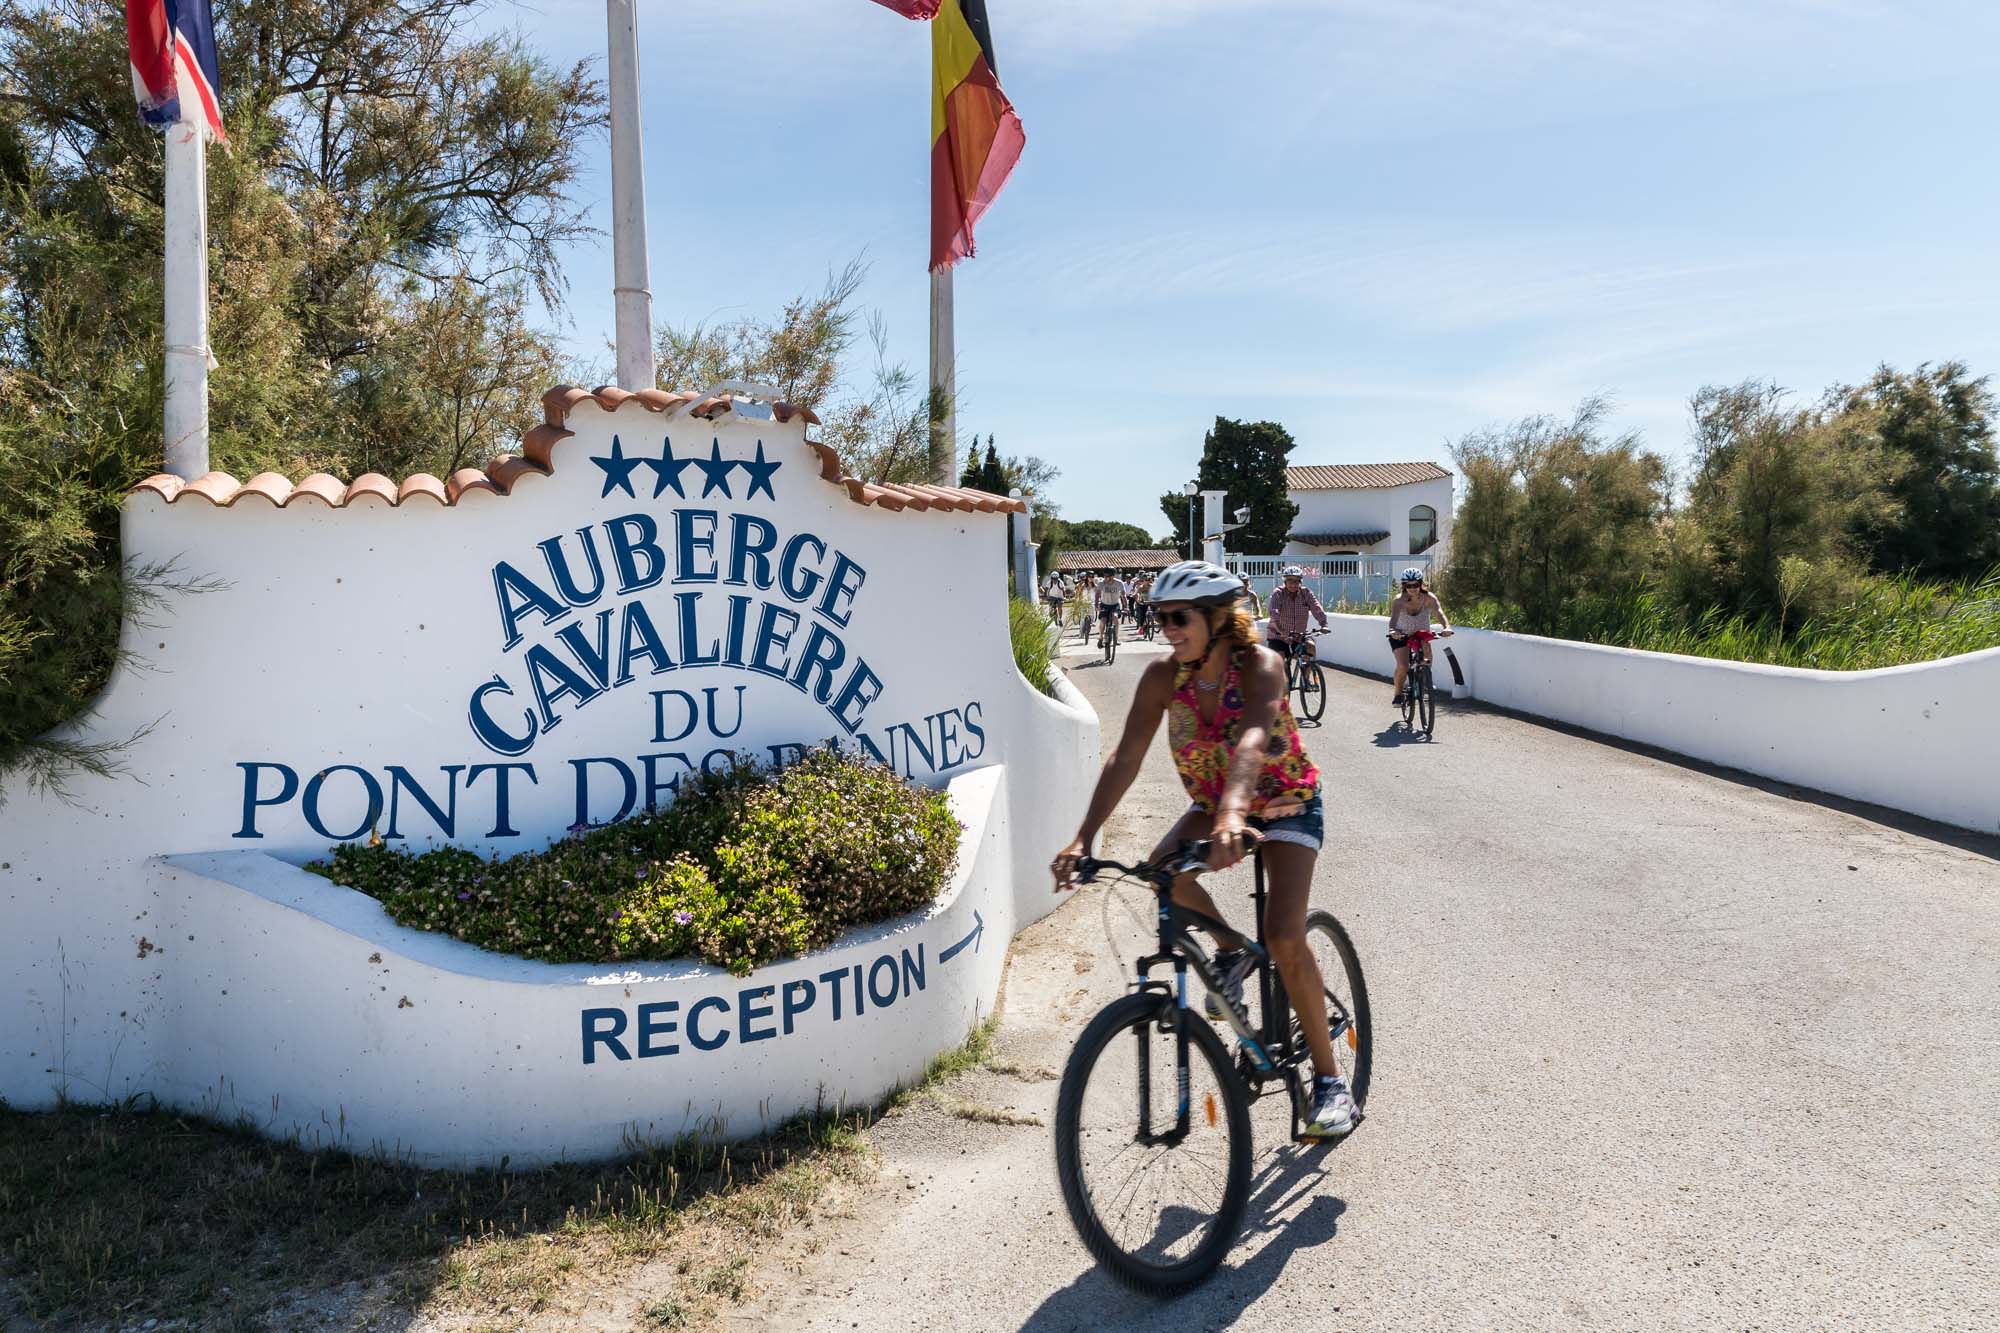 hôtel accueillant les cyclistes hôtel pour visiter la Camargue à vélo